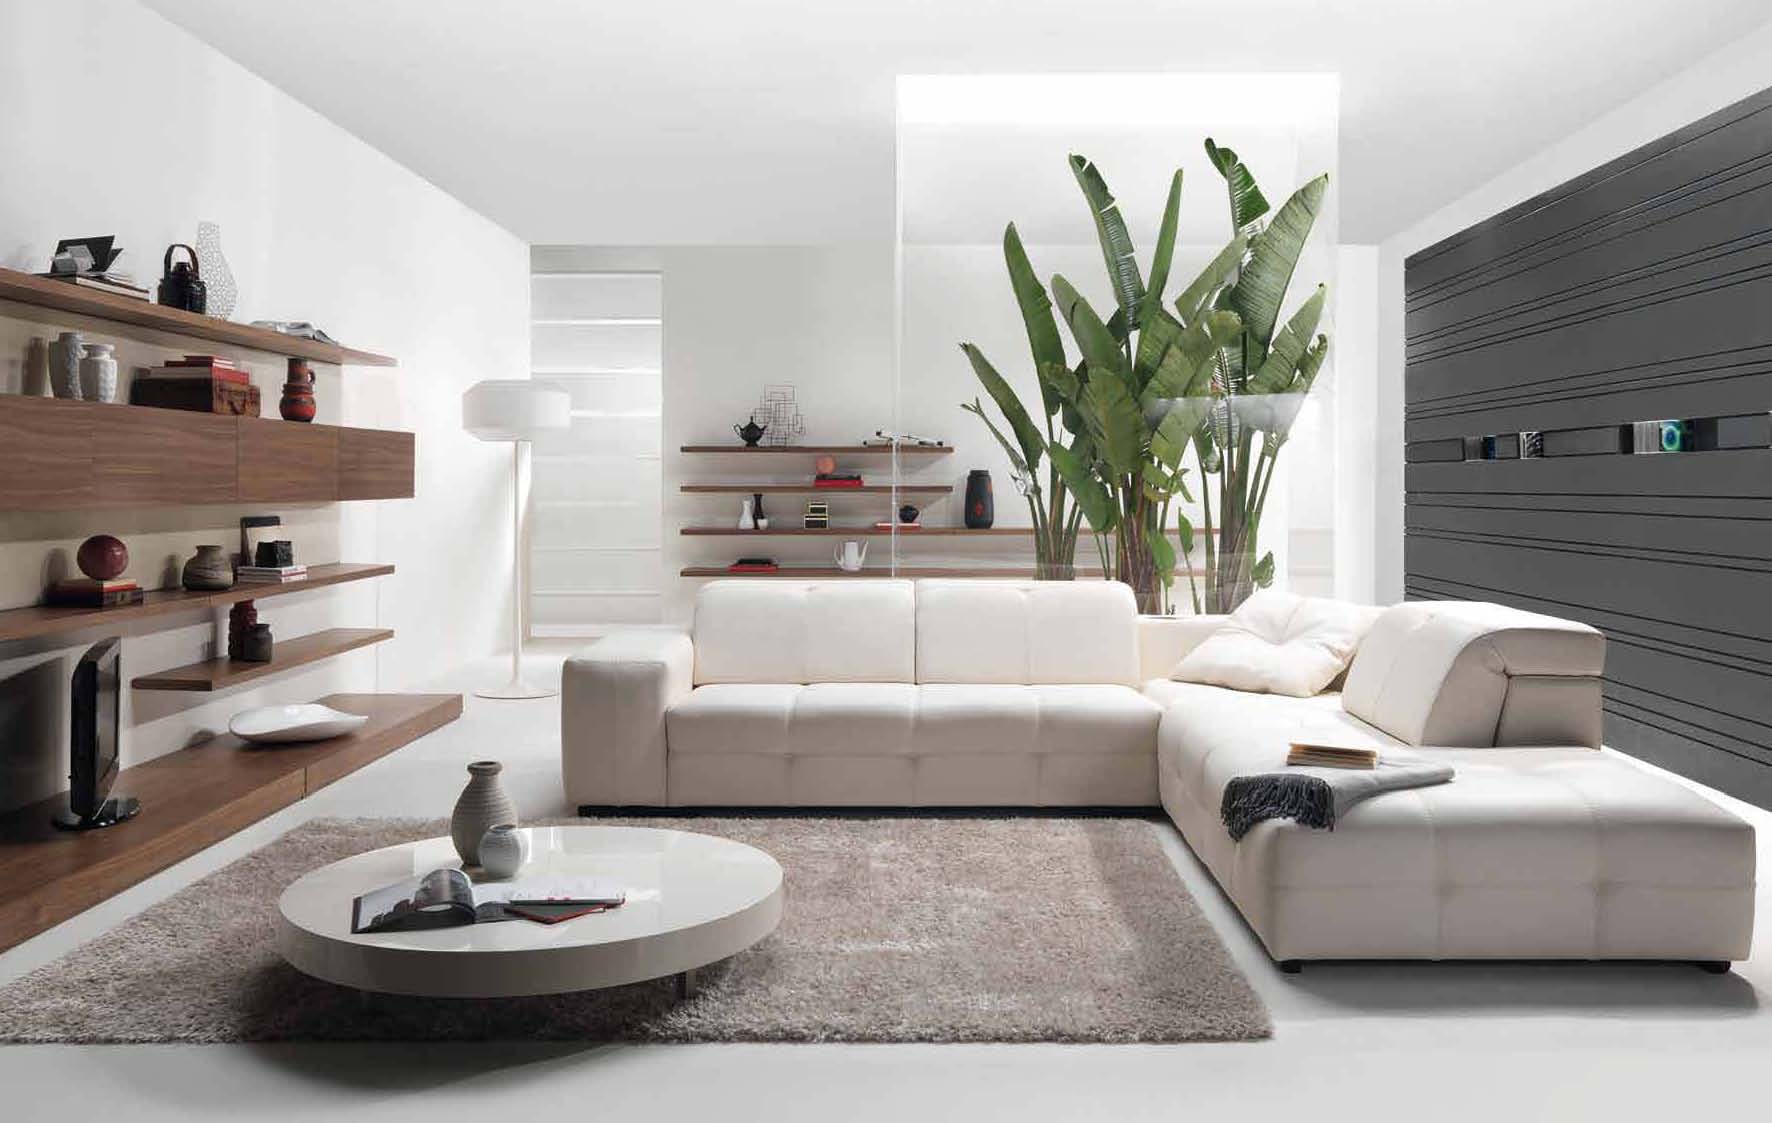 7 Modern Decorating Style Must-Haves - Decorilla Online Interior Design